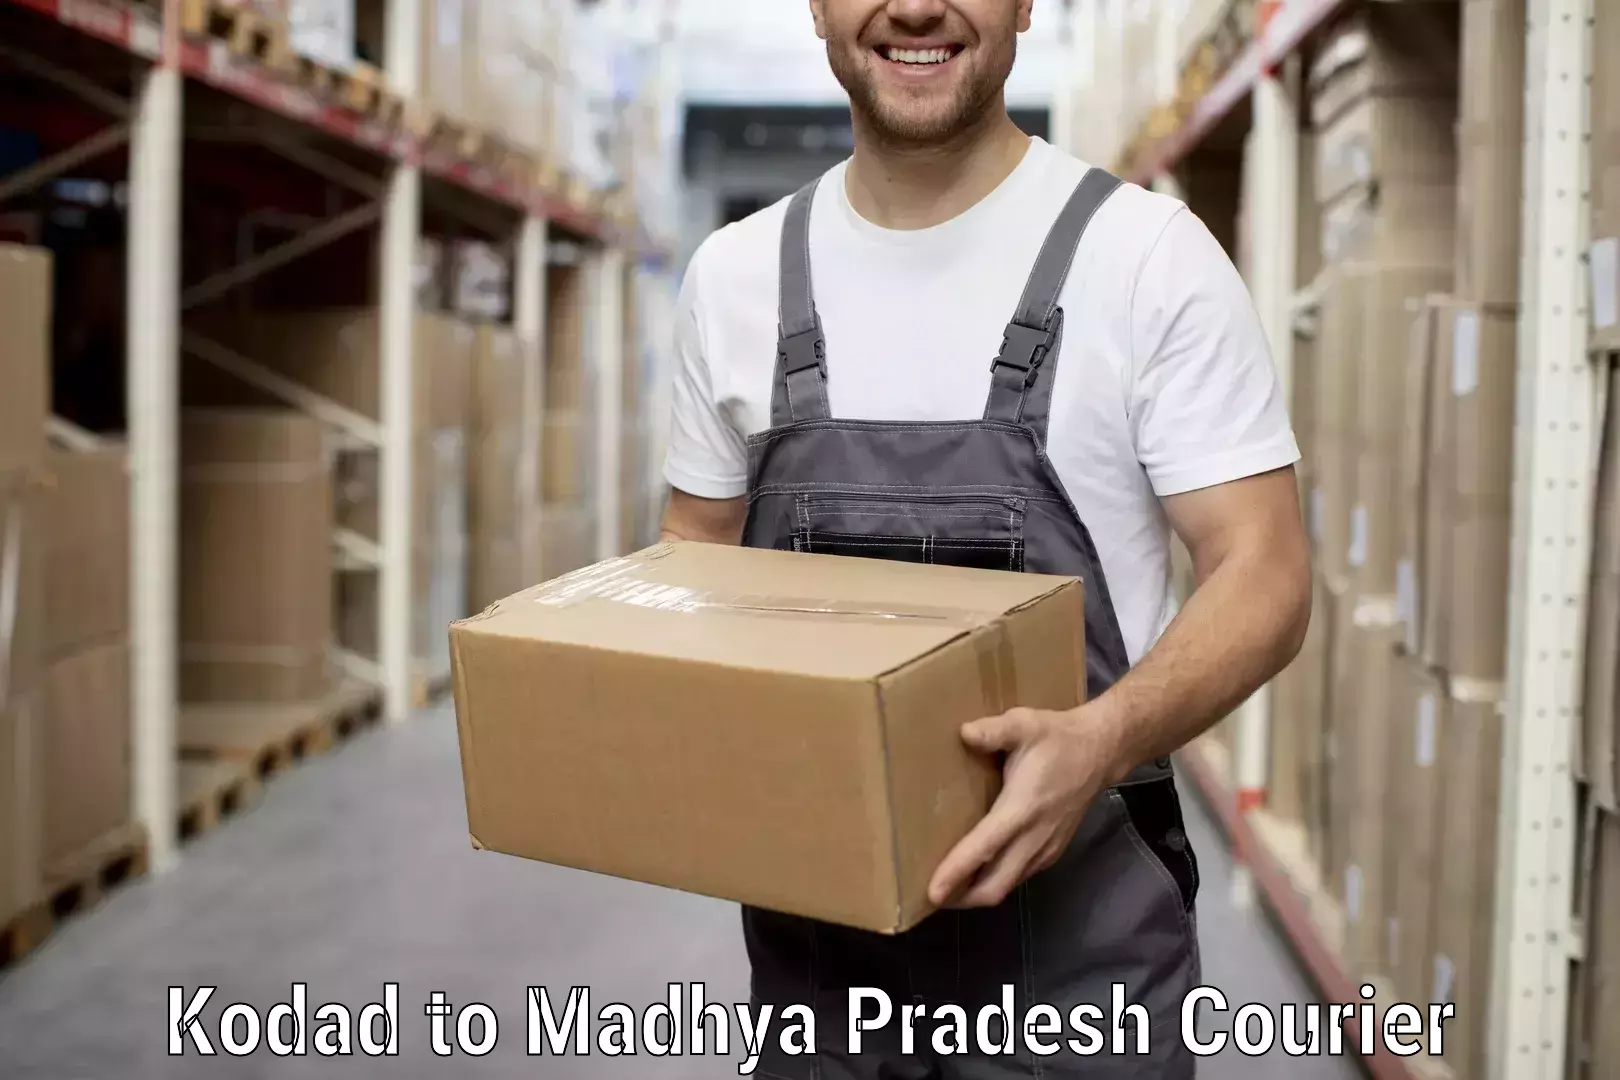 Professional packing and transport Kodad to Niwari